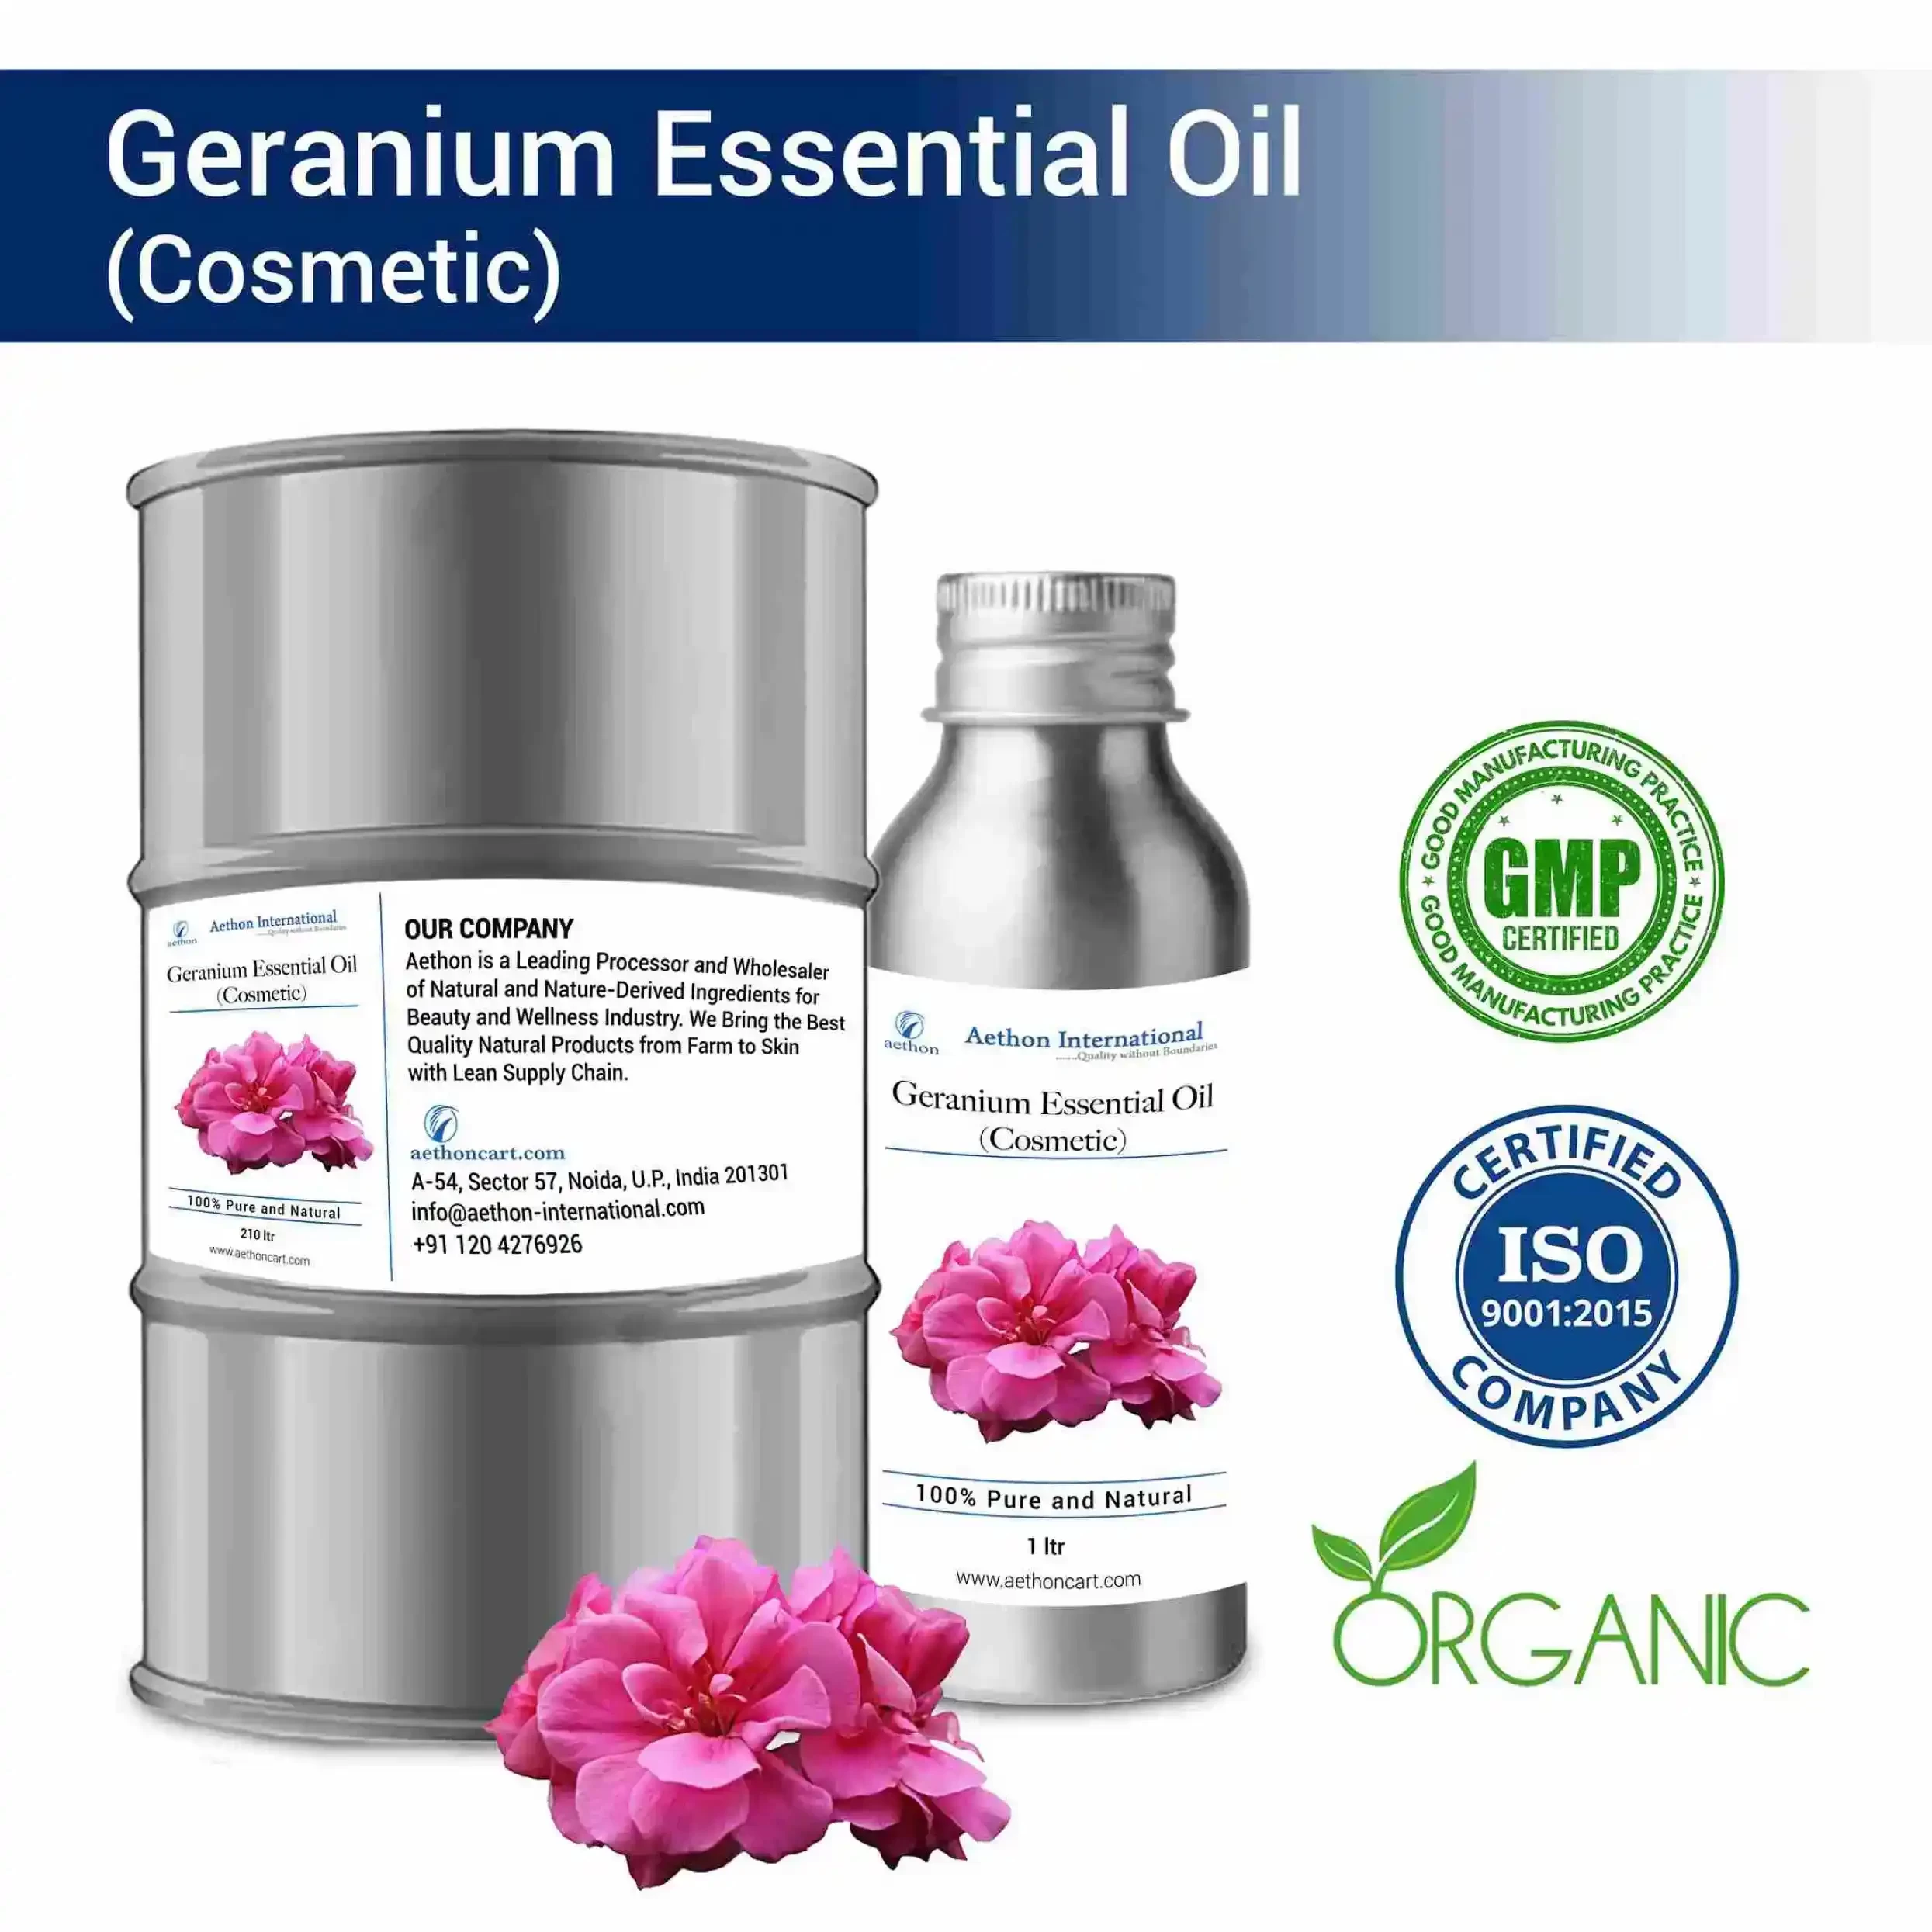 Geranium Essential Oil (Cosmetic)